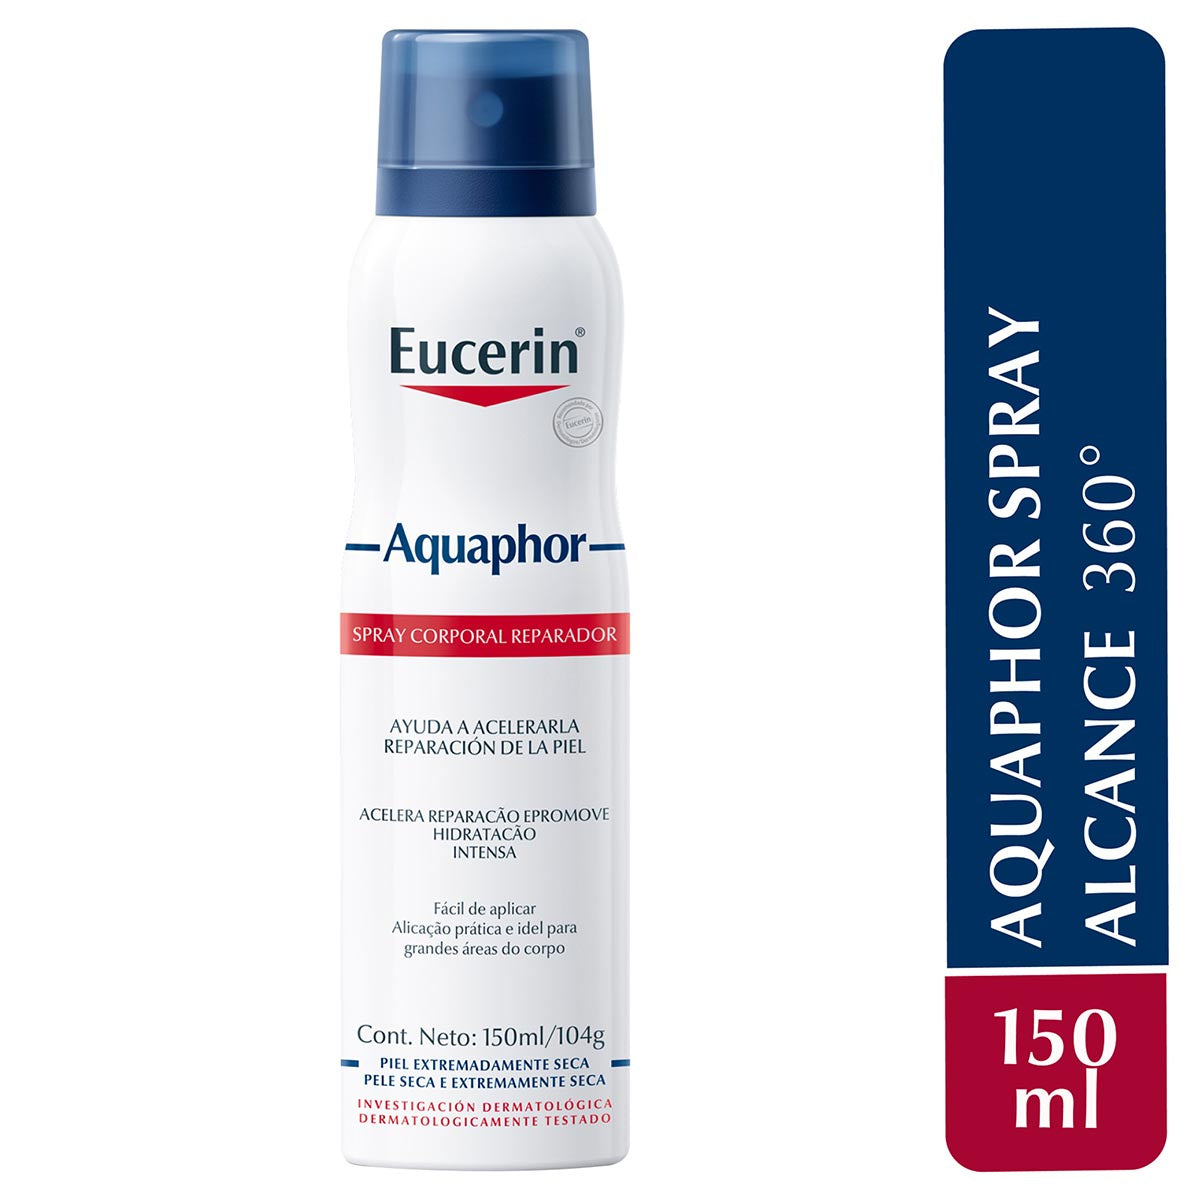 Eucerin aquaphor spray corporal reparador 150ml.